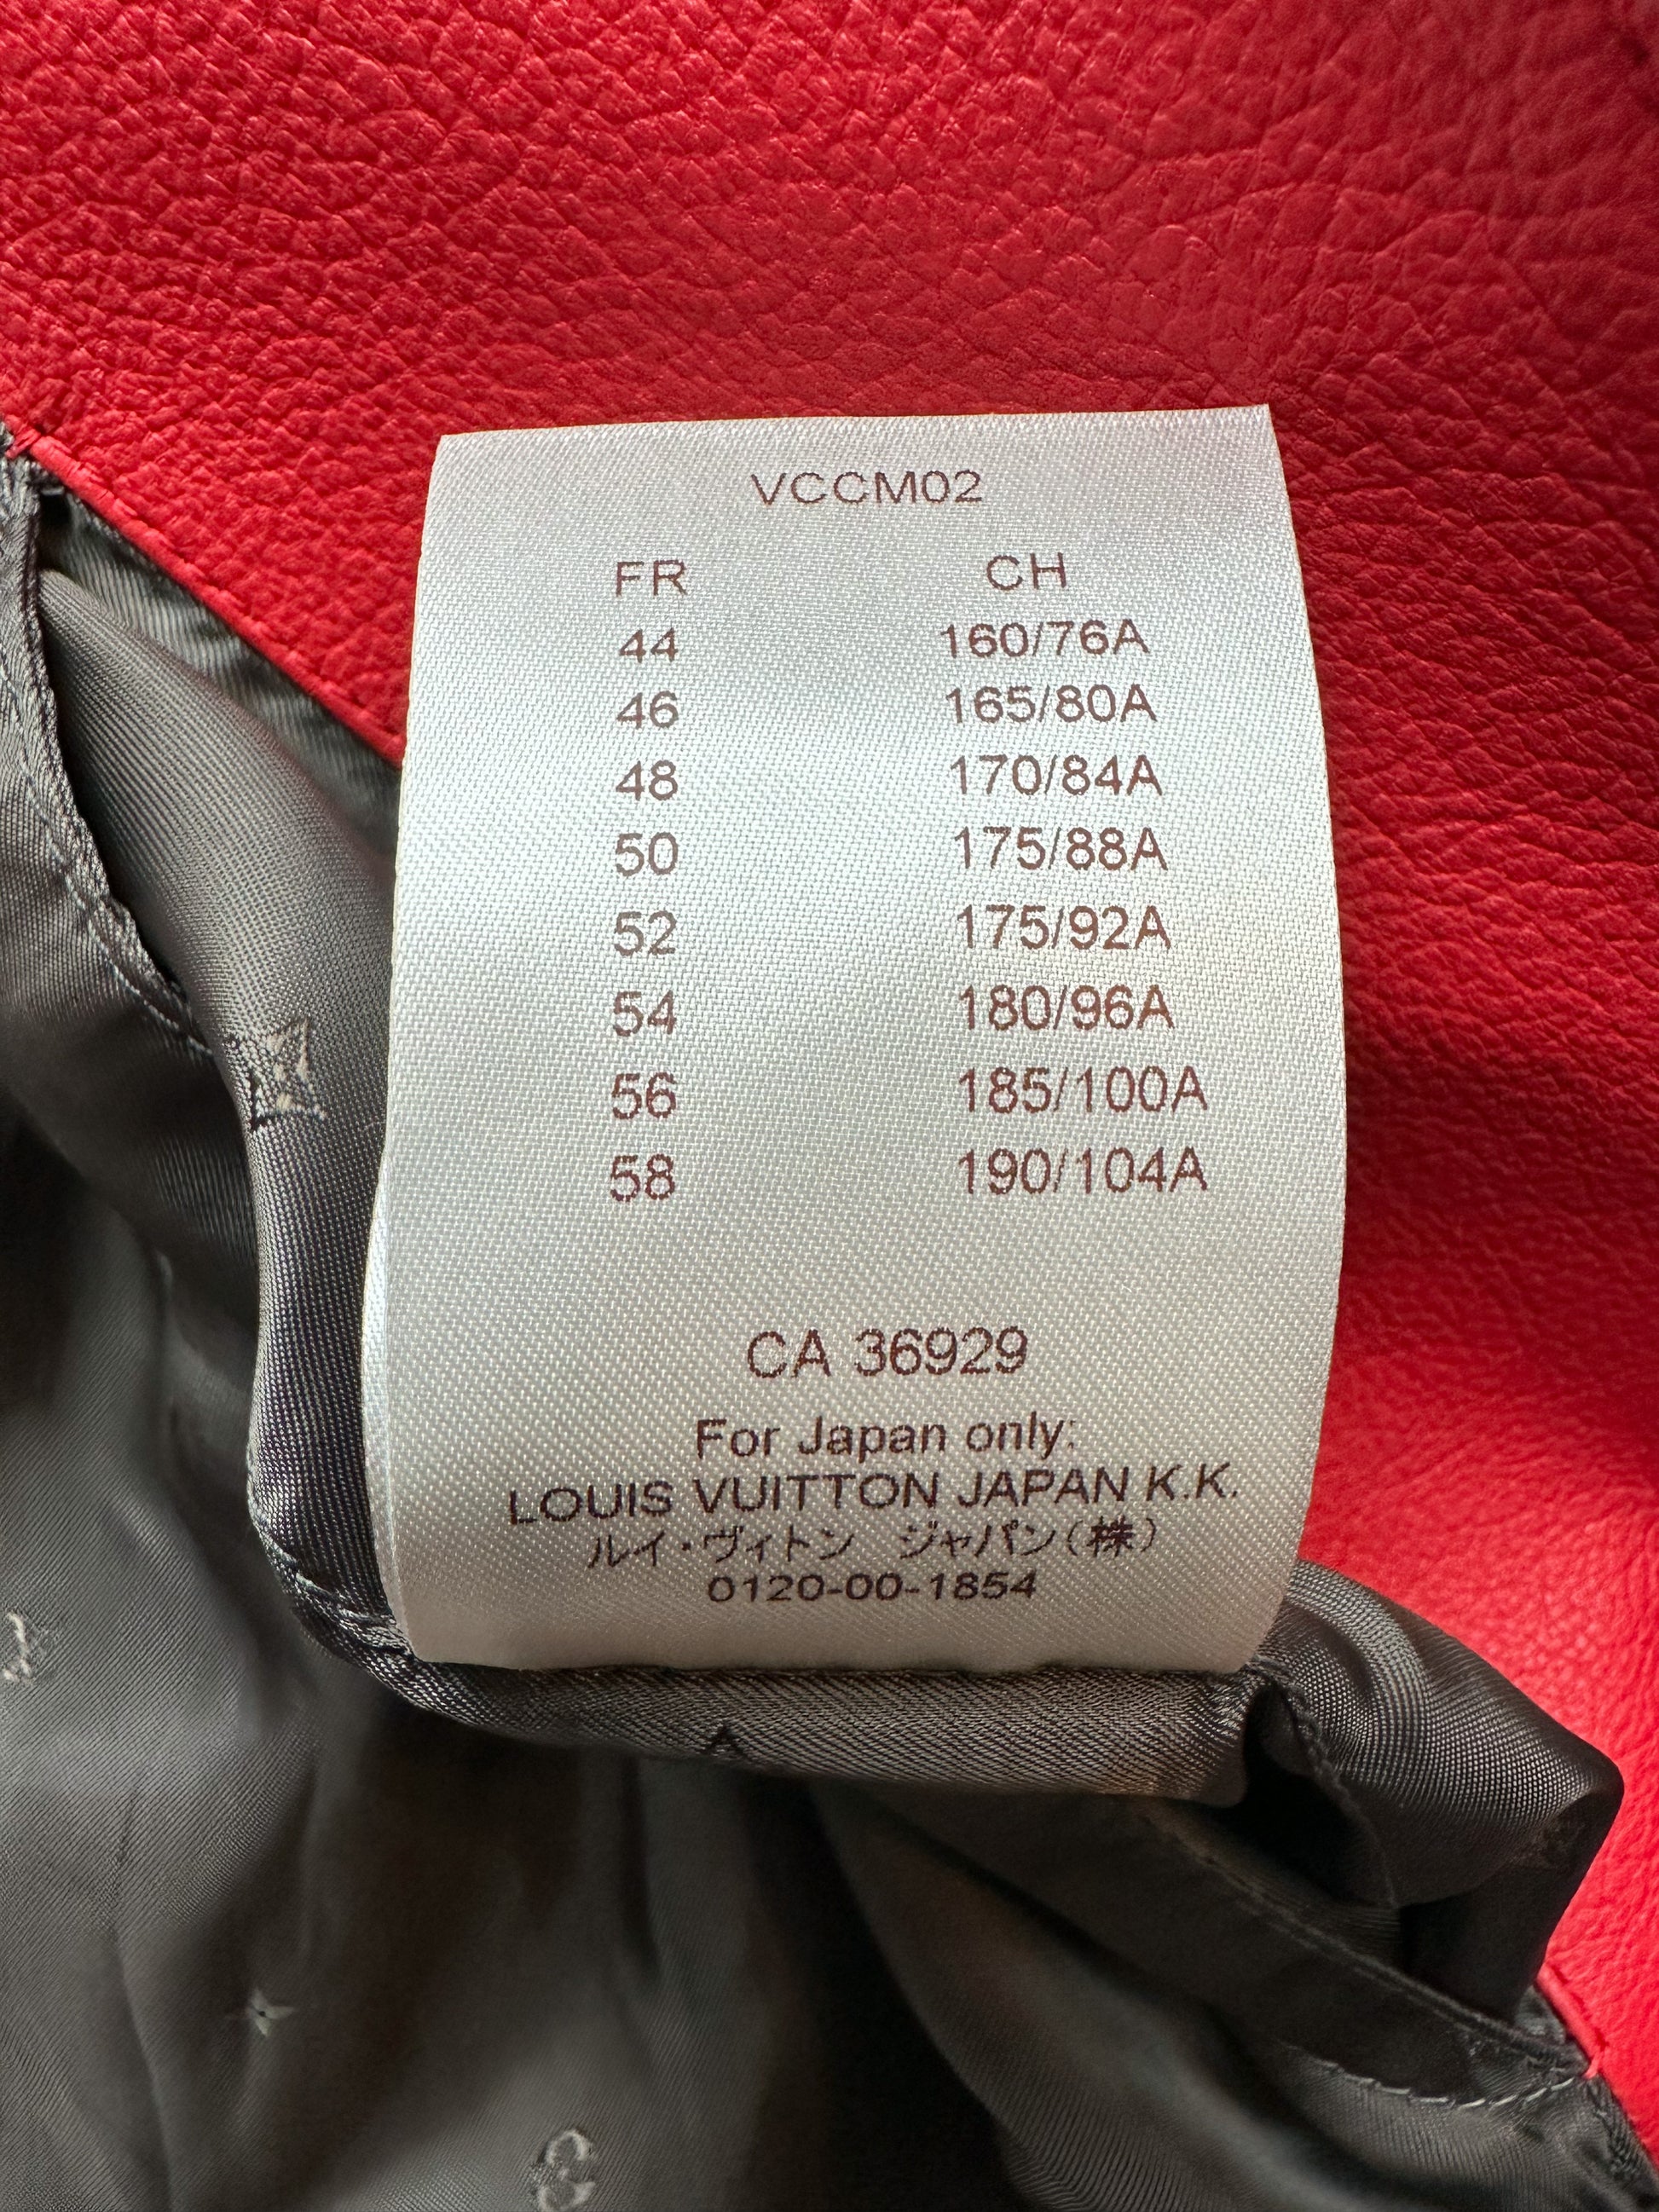 Louis Vuitton Supreme Red Jacket Price